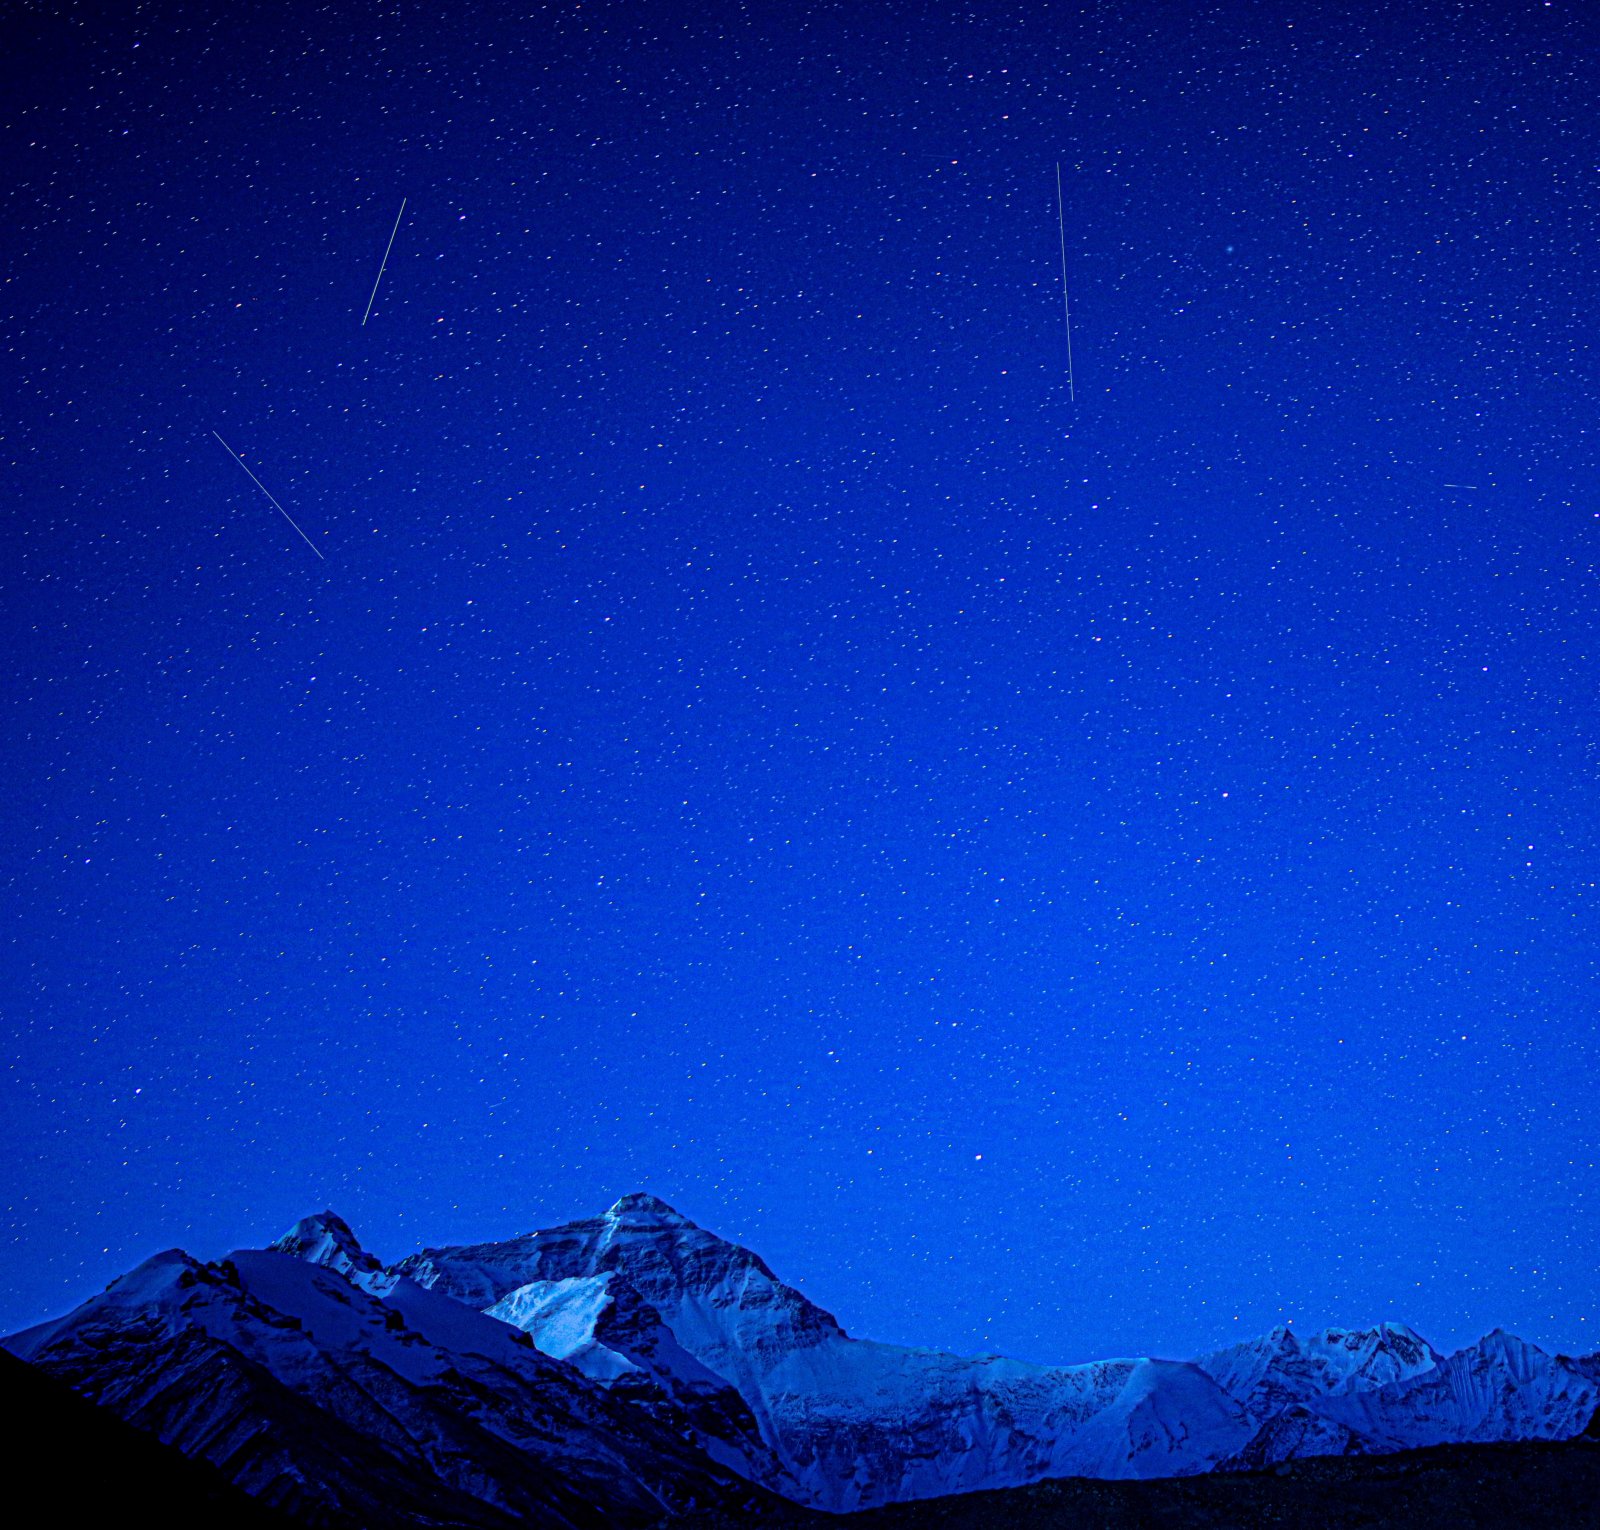 這是5月4日清晨在珠峰大本營拍攝的流星雨。